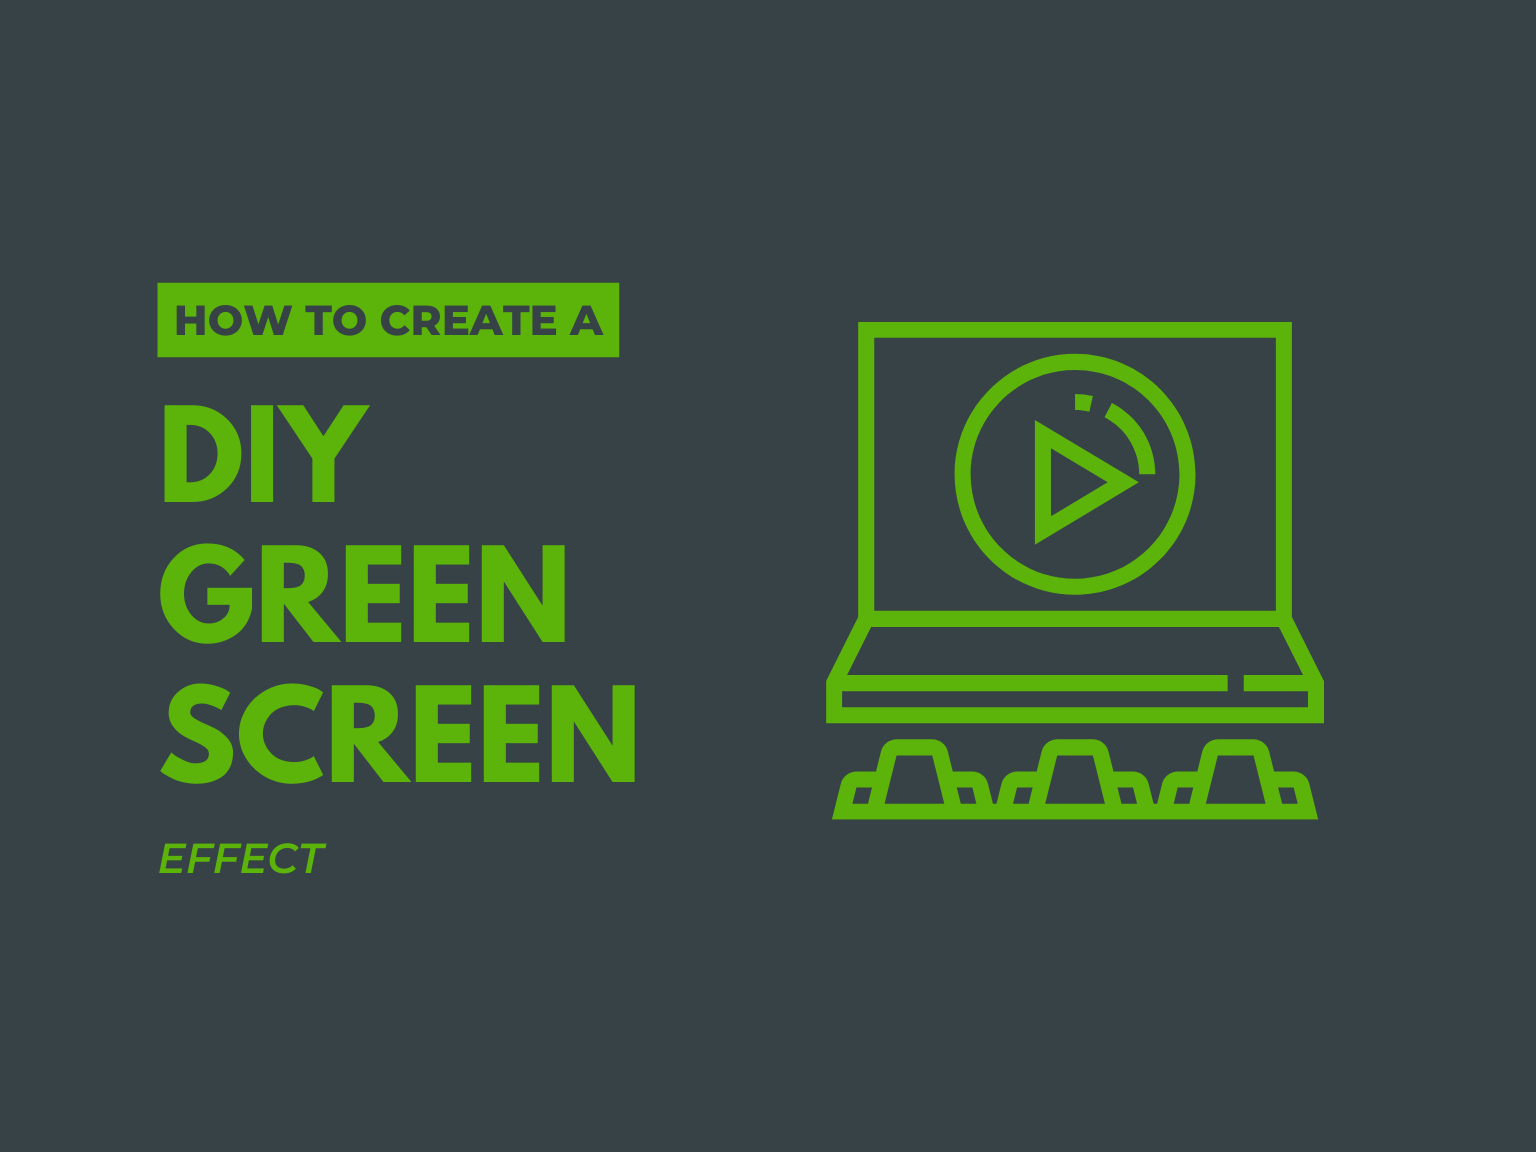 DIY Green Screen Video Effect là một trong những kỹ thuật đỉnh cao trong làm video. Với kỹ thuật này, bạn có thể tạo ra những đoạn video với phông nền hoàn toàn tự chọn, tạo nên những hiệu ứng đặc biệt và độc đáo. Hãy khám phá thế giới video với DIY Green Screen Video Effect.